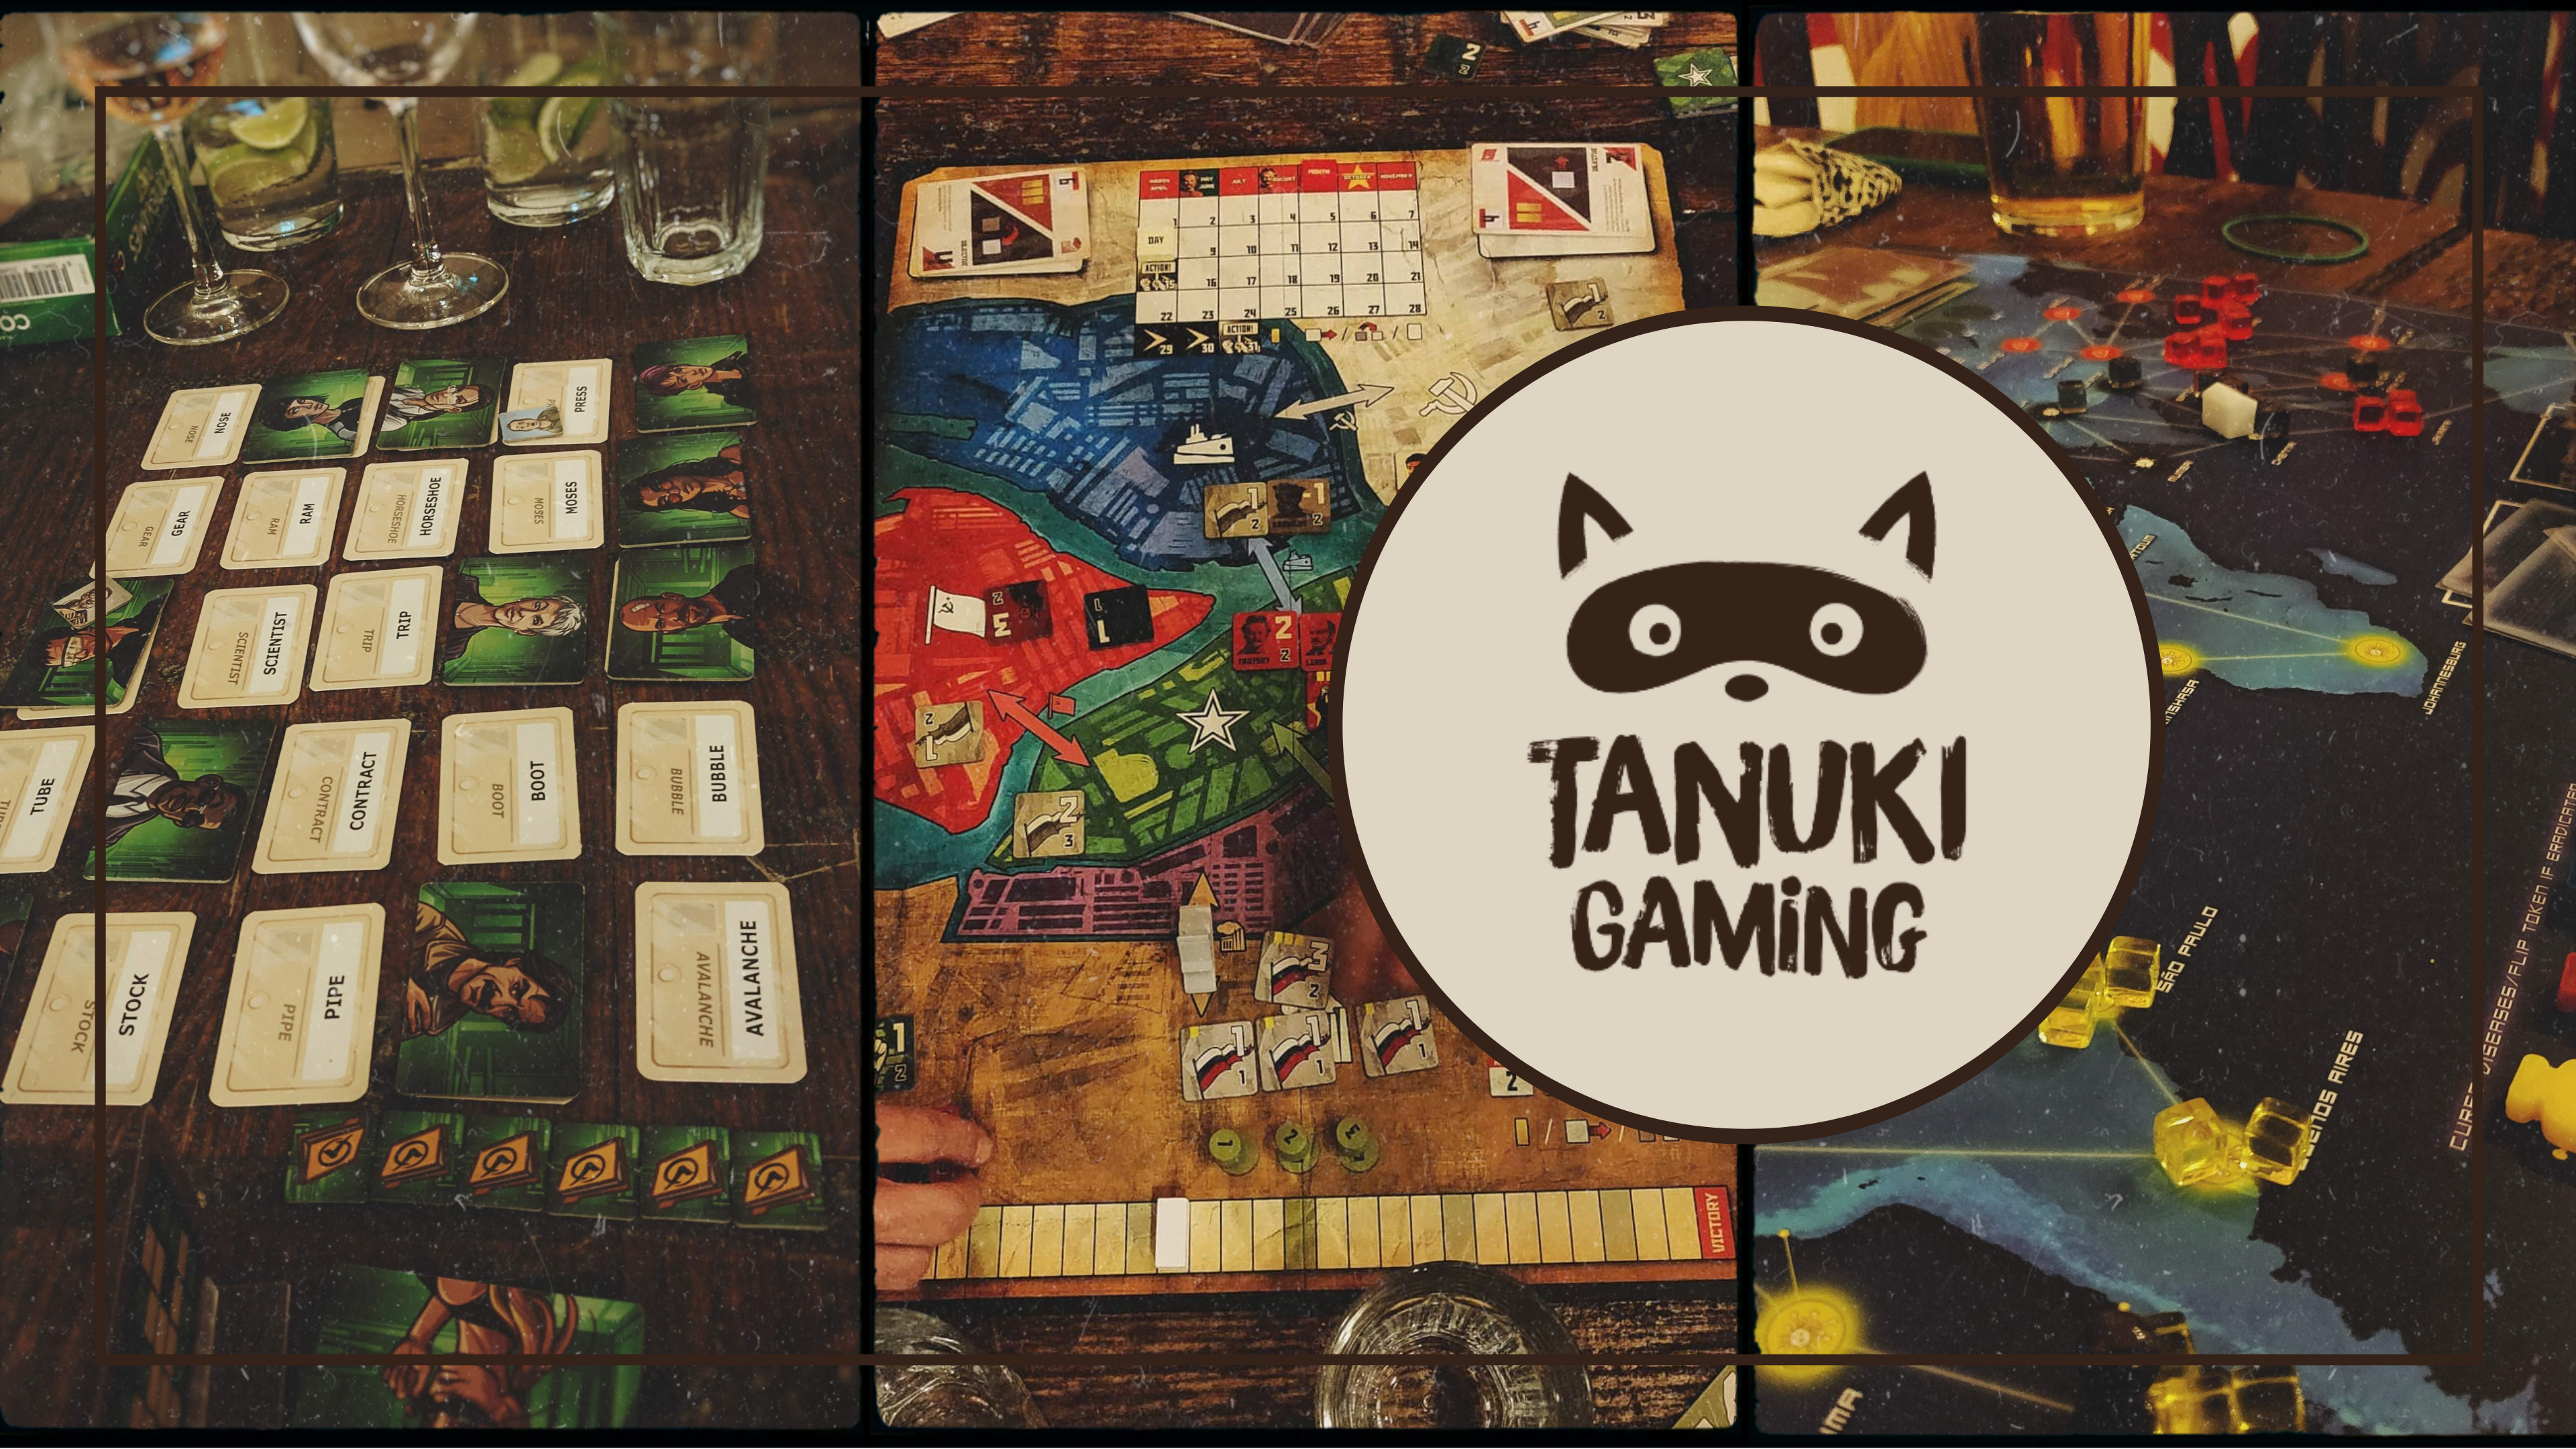 Tanuki Gaming